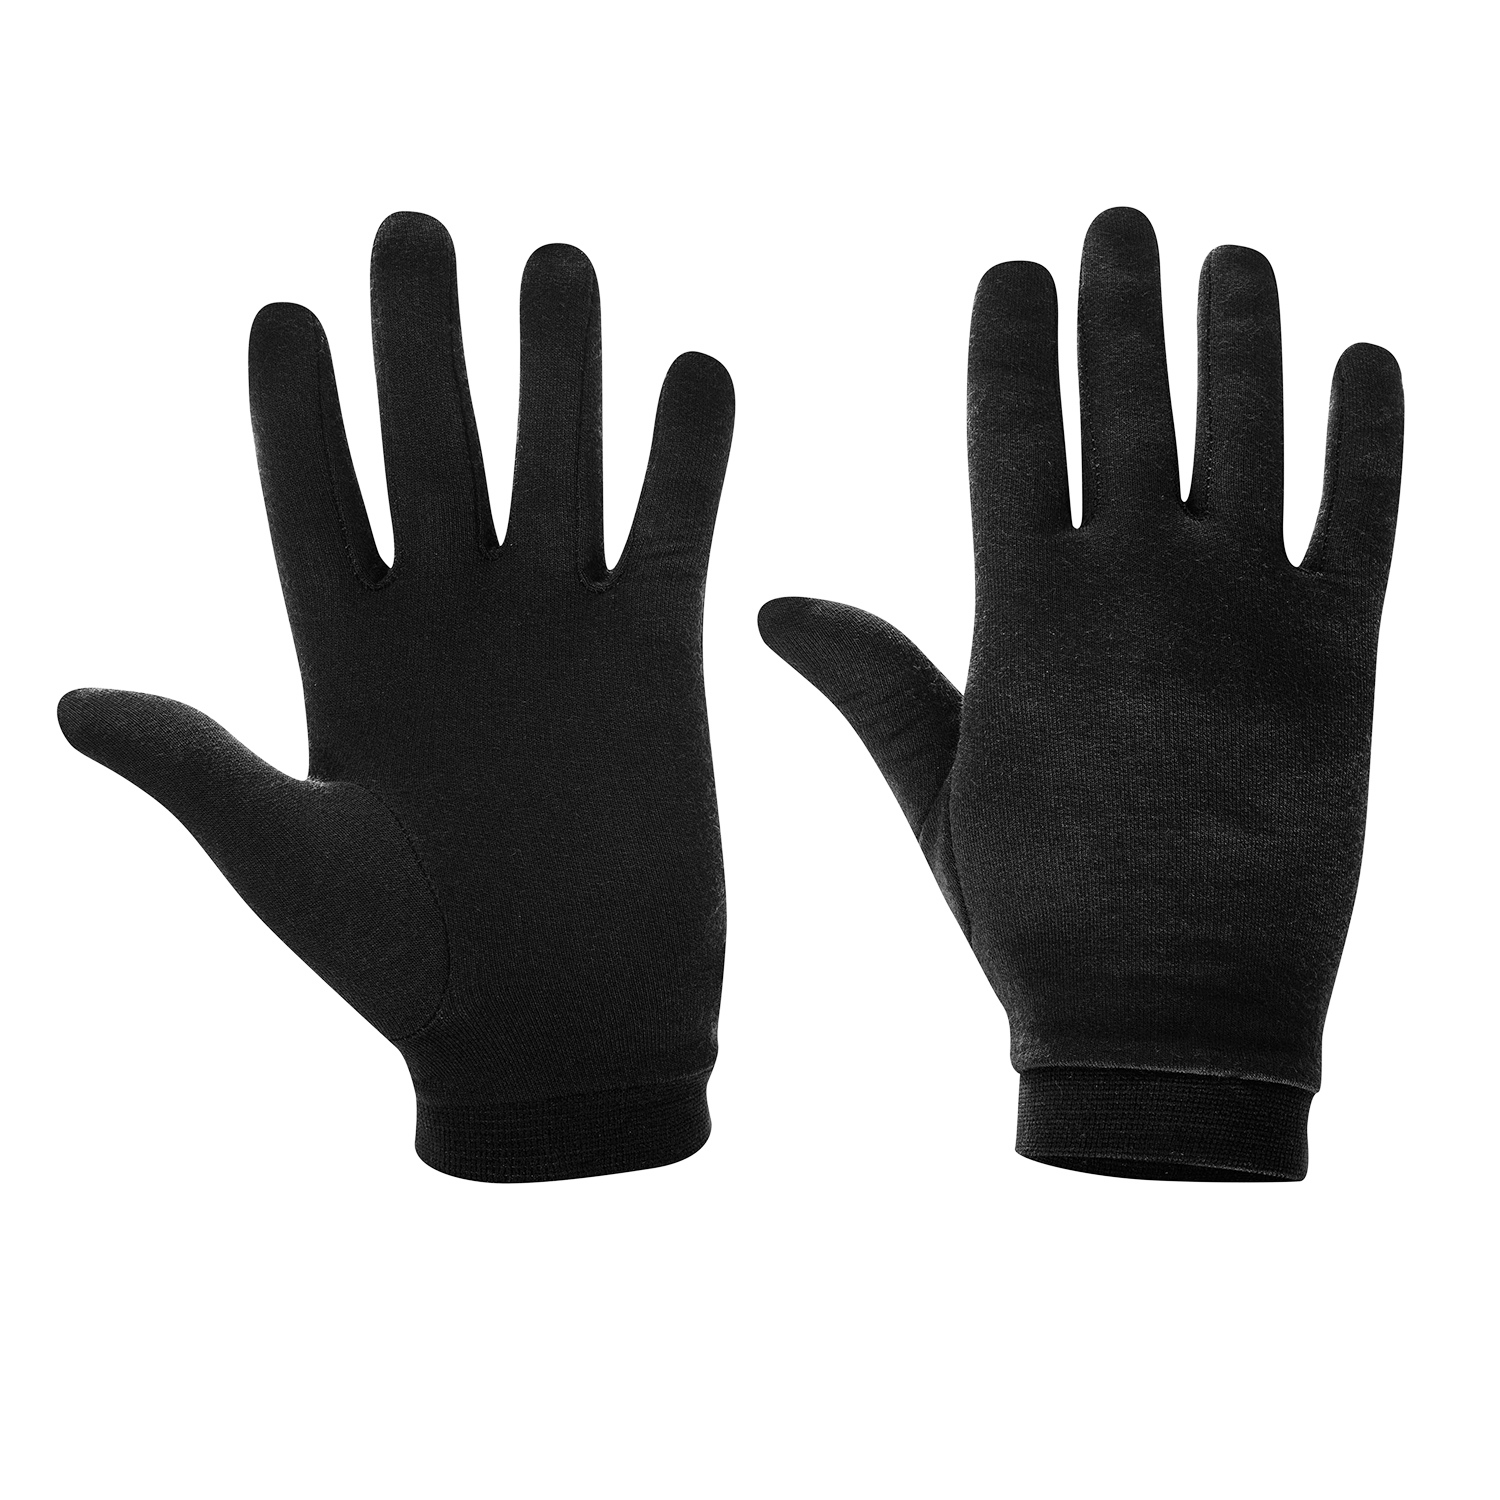 Produktbild von Löffler Merino Wool Handschuhe - schwarz 990